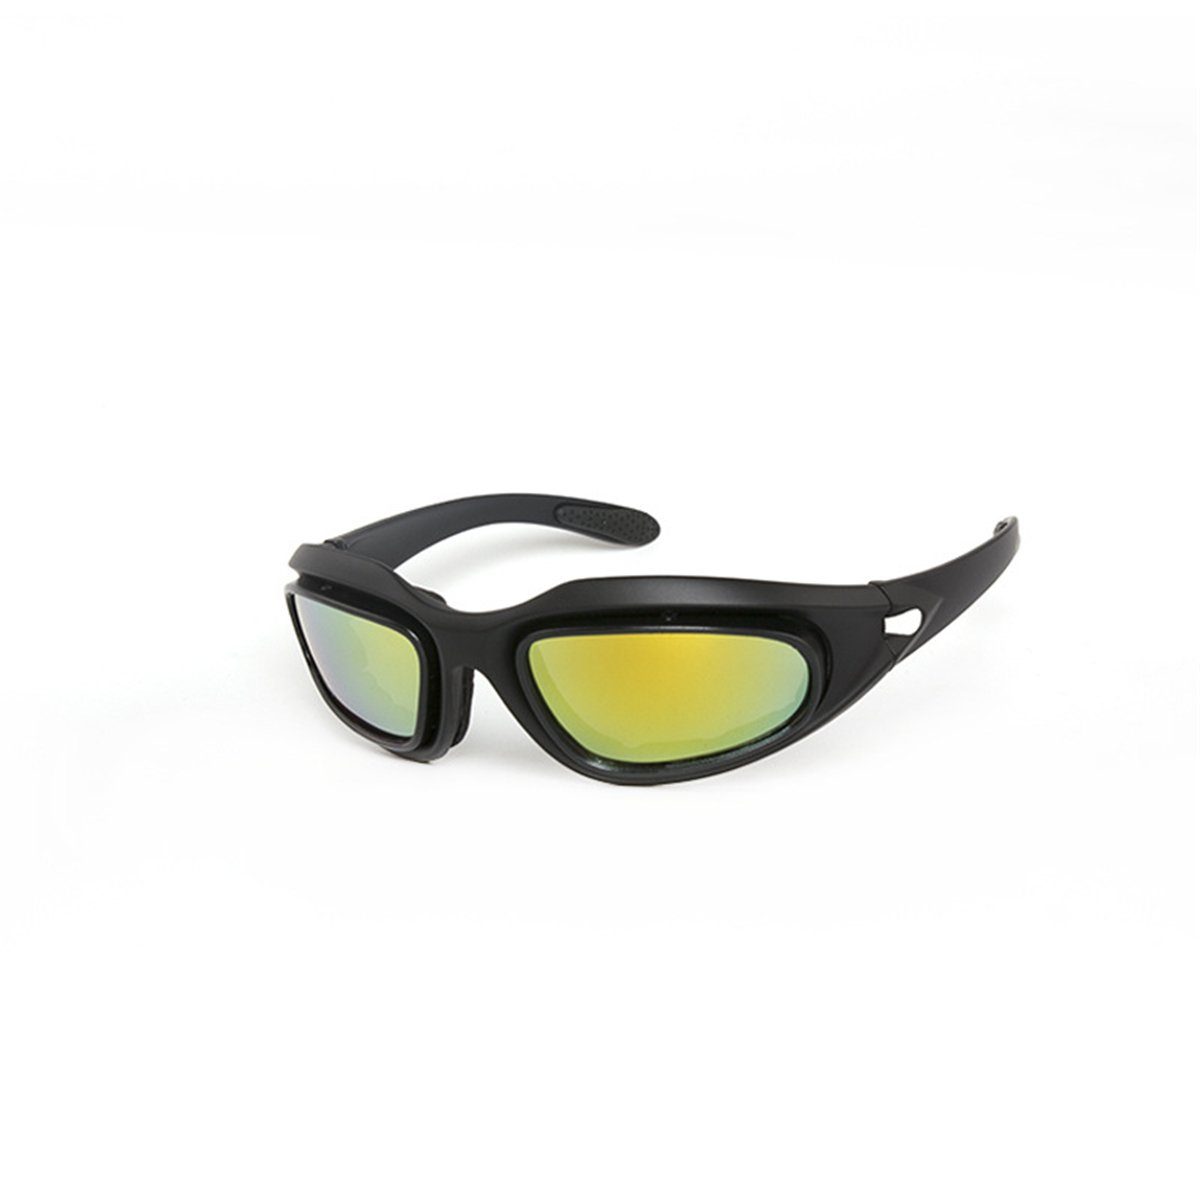 Die Sterne Motorradbrille Fahrrad-Motorradbrille mit Sportliche (1-St) Wechselgläsern, winddichte